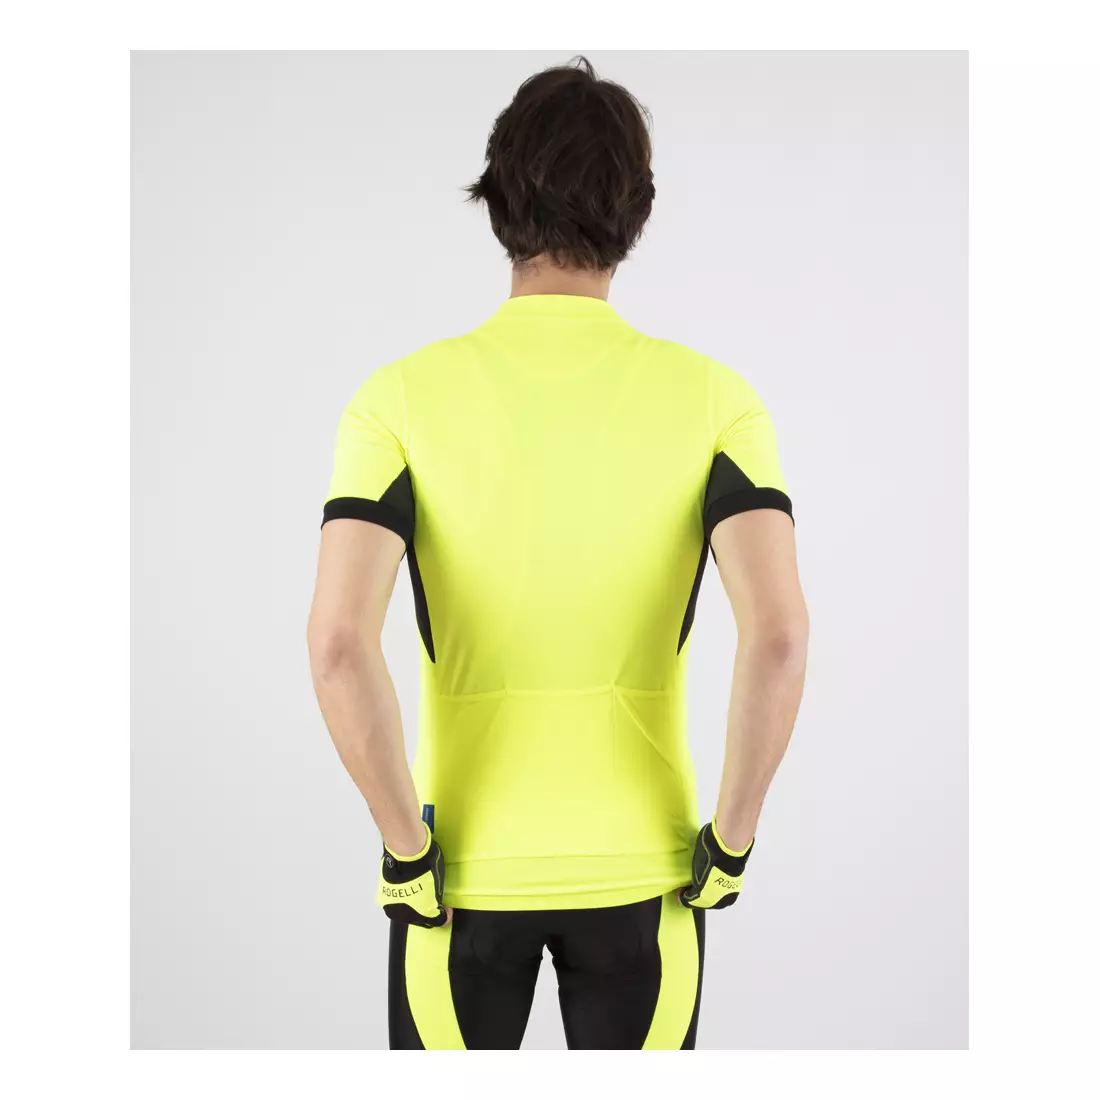 ROGELLI PERUGIA 2.0 tricou de ciclism pentru bărbați, galben fluor